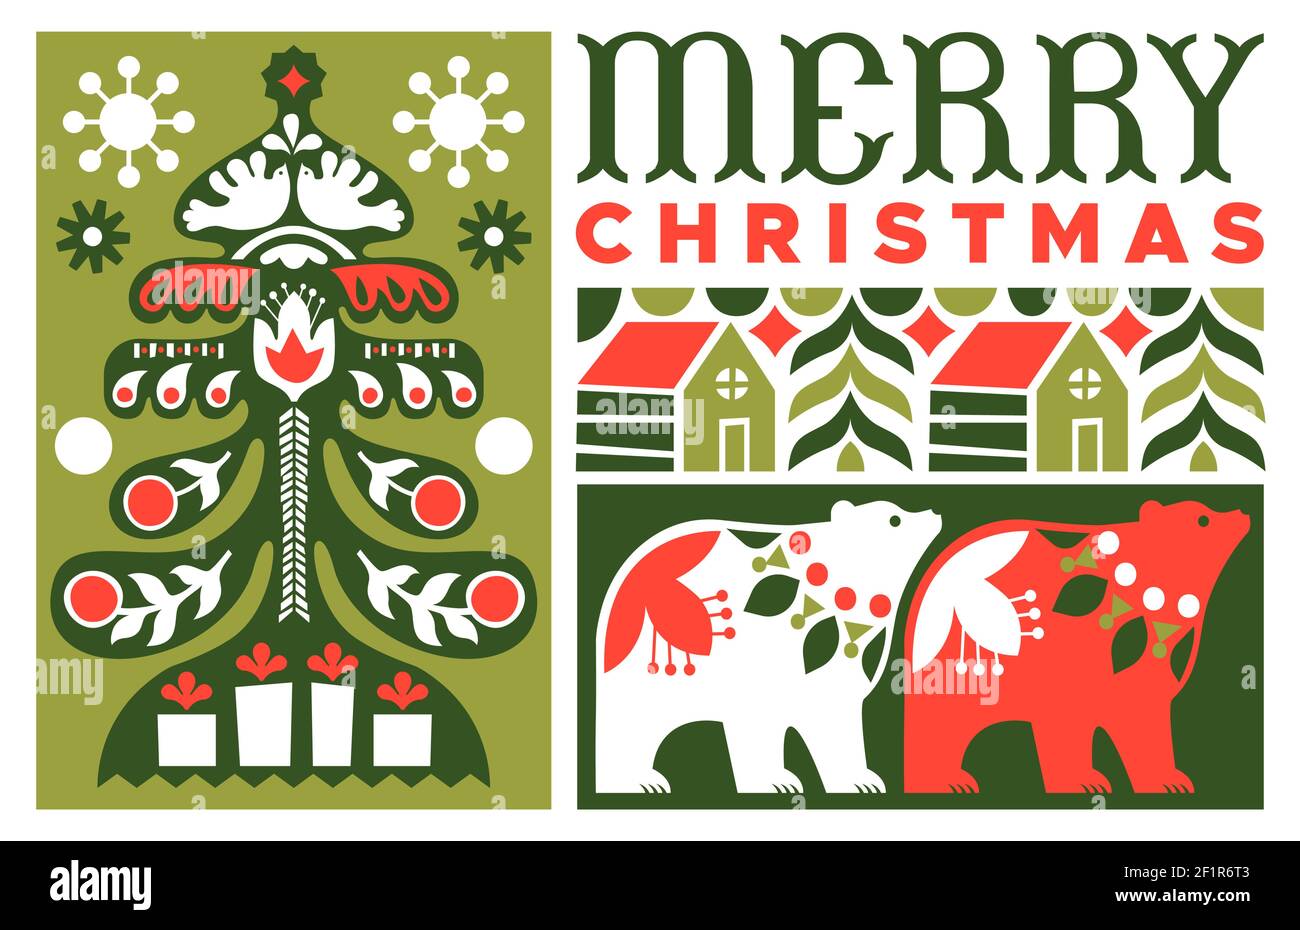 Frohe Weihnachten Grußkarte Illustration im traditionellen Volkskunst-Stil. Festliches Feiertagsdesign mit geometrischer flacher nordischer Dekoration. Inklusive Kiefer Stock Vektor